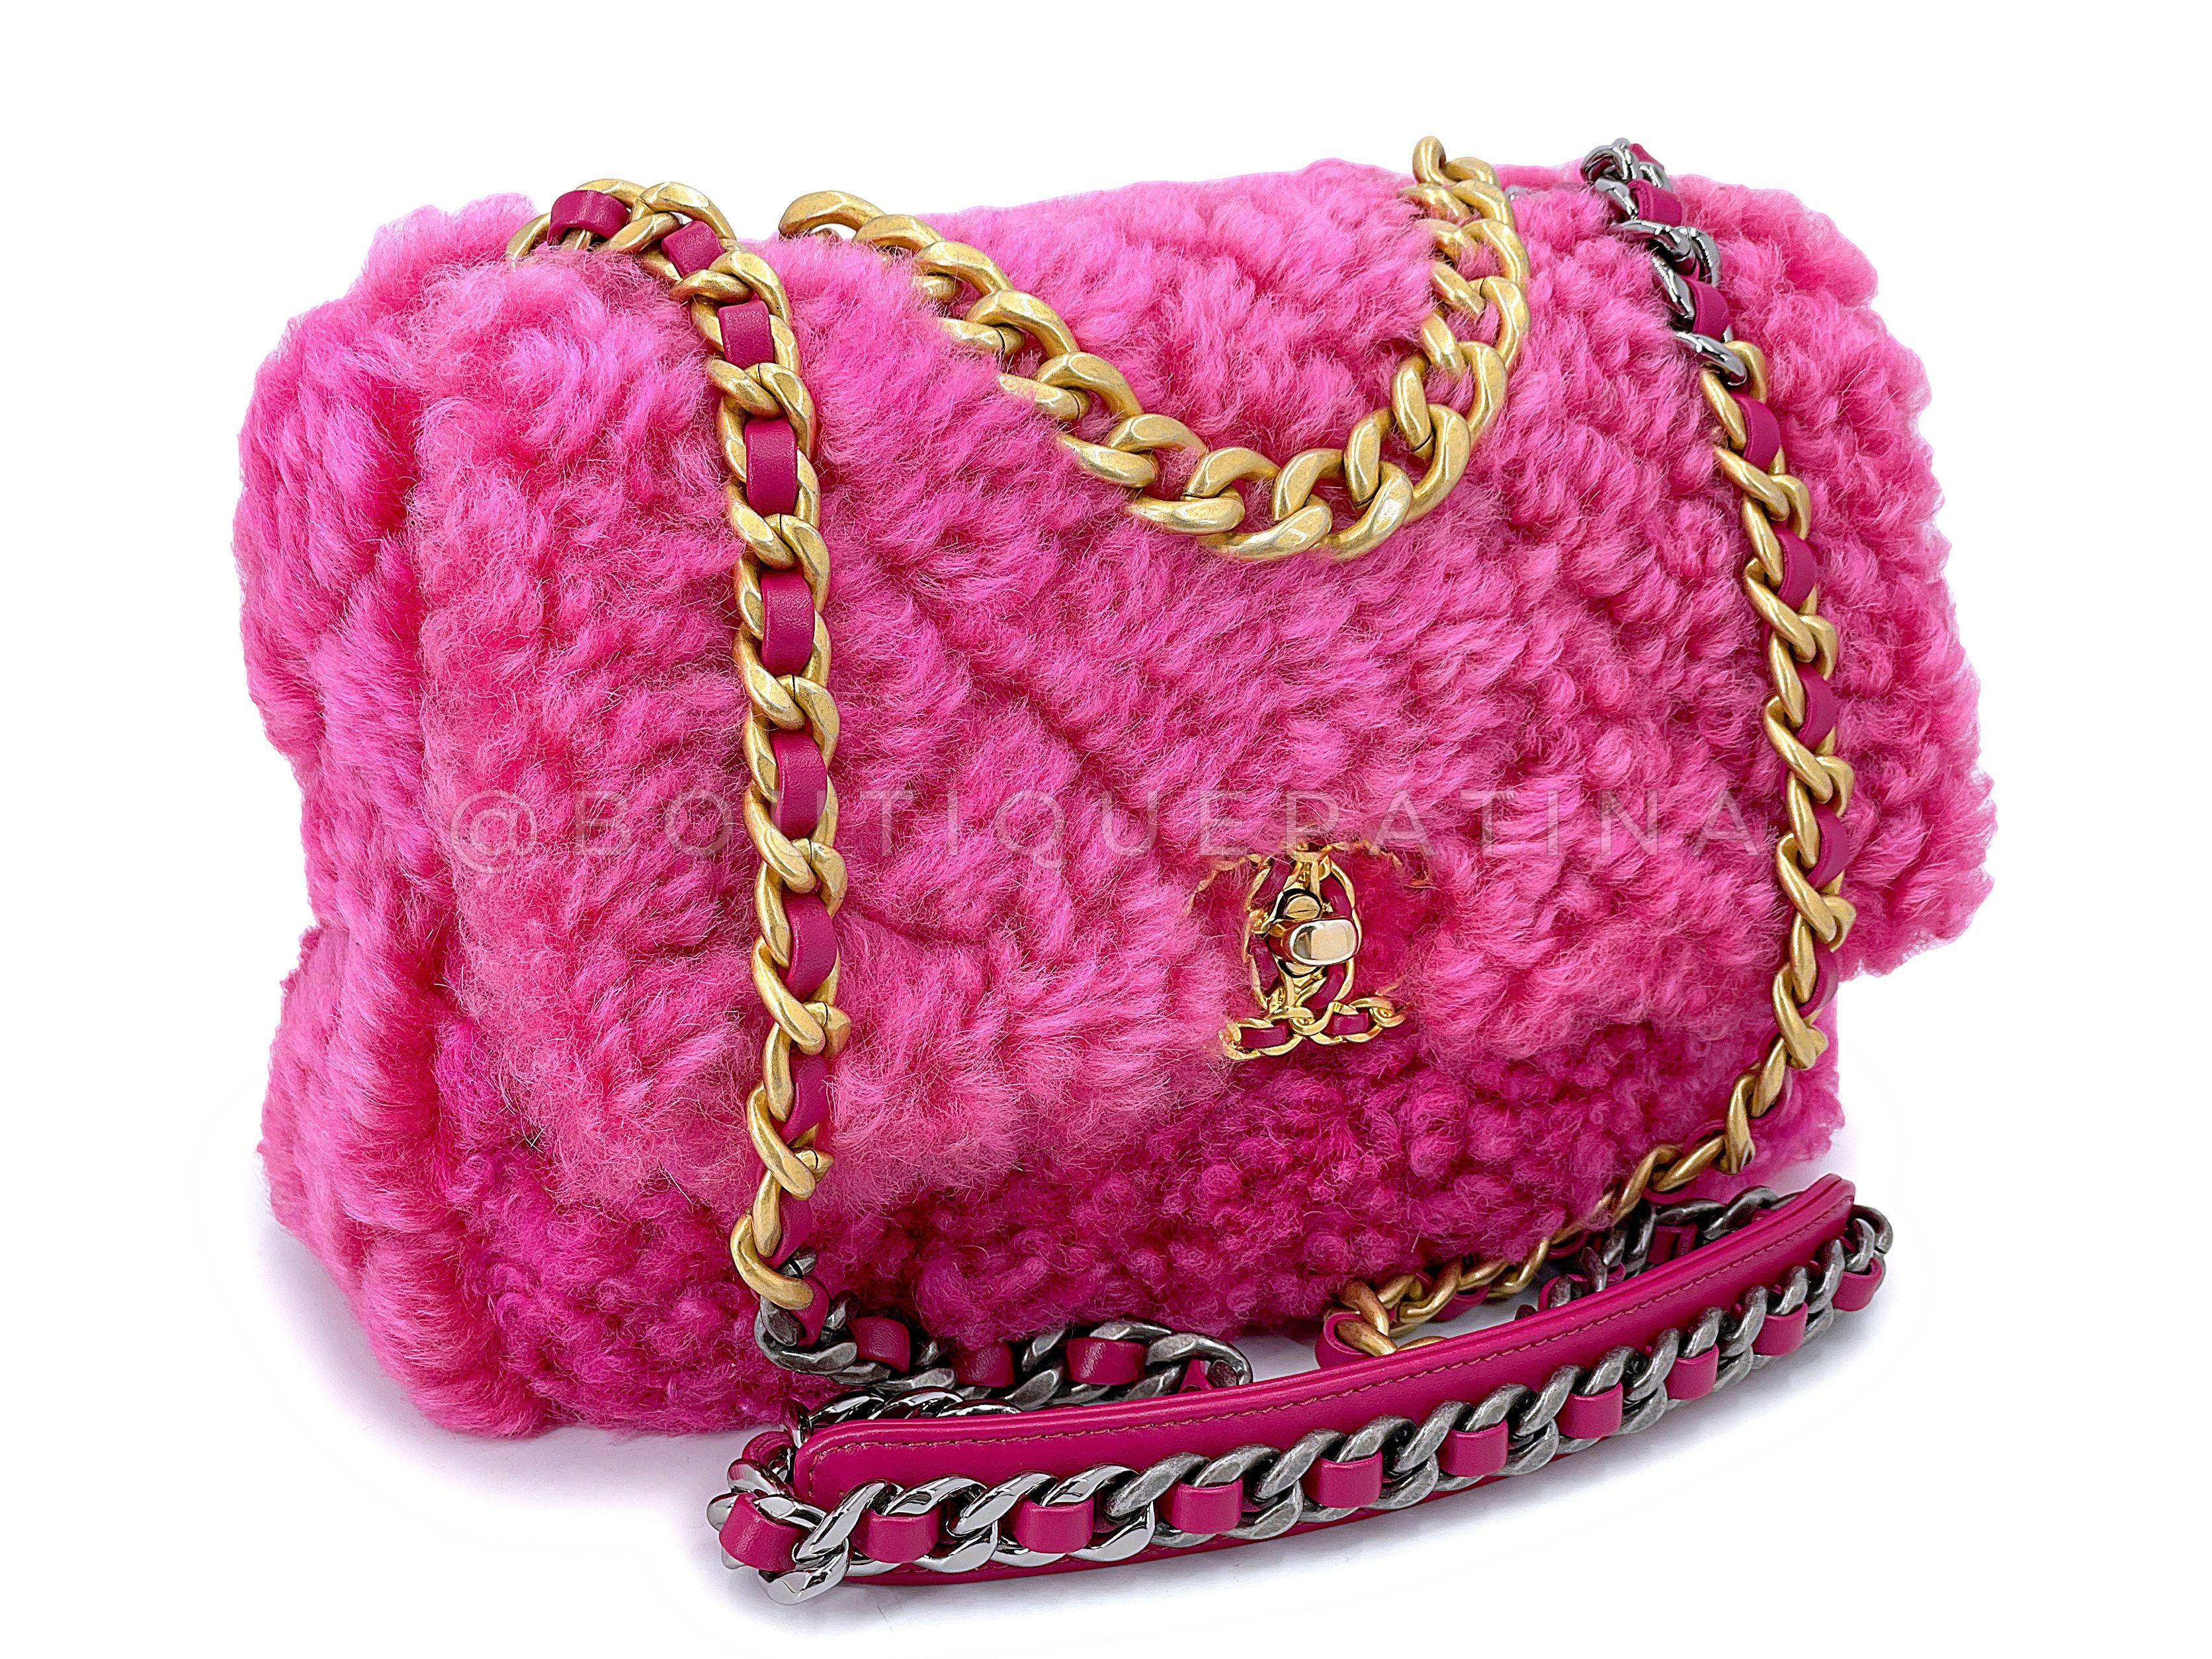 Article du magasin : 67786
Ce petit sac à rabat moyen en fourrure de shearling rose de Chanel 19 est super fantaisiste et délicieux avec sa fourrure de shearling rose fuchsia qui est douillette et chic à la fois. 

Le Chanel 19 ligne est un look